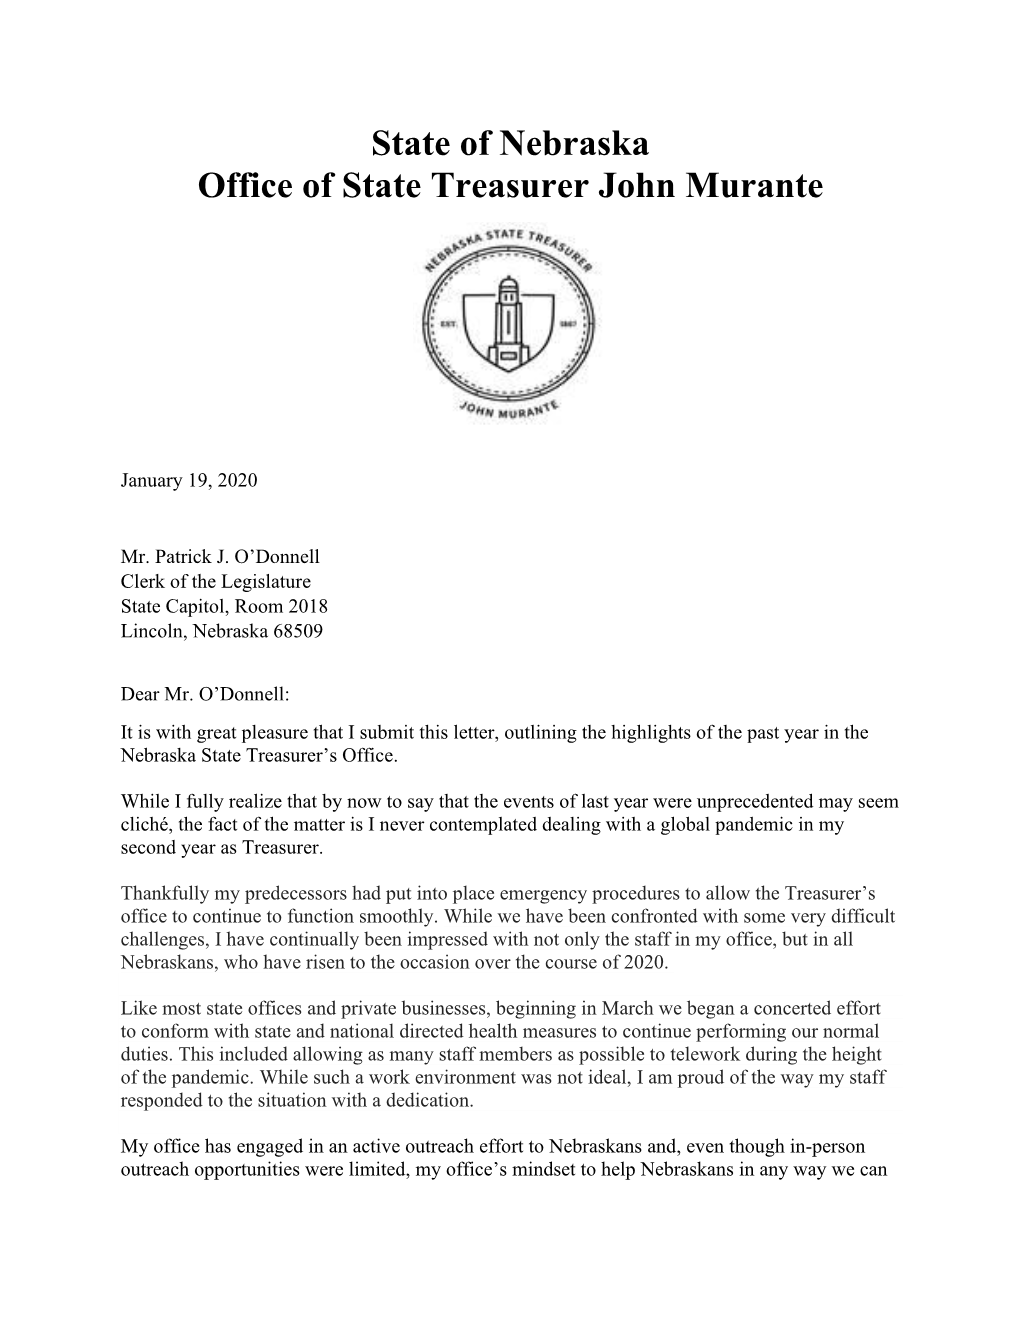 State of Nebraska Office of State Treasurer John Murante